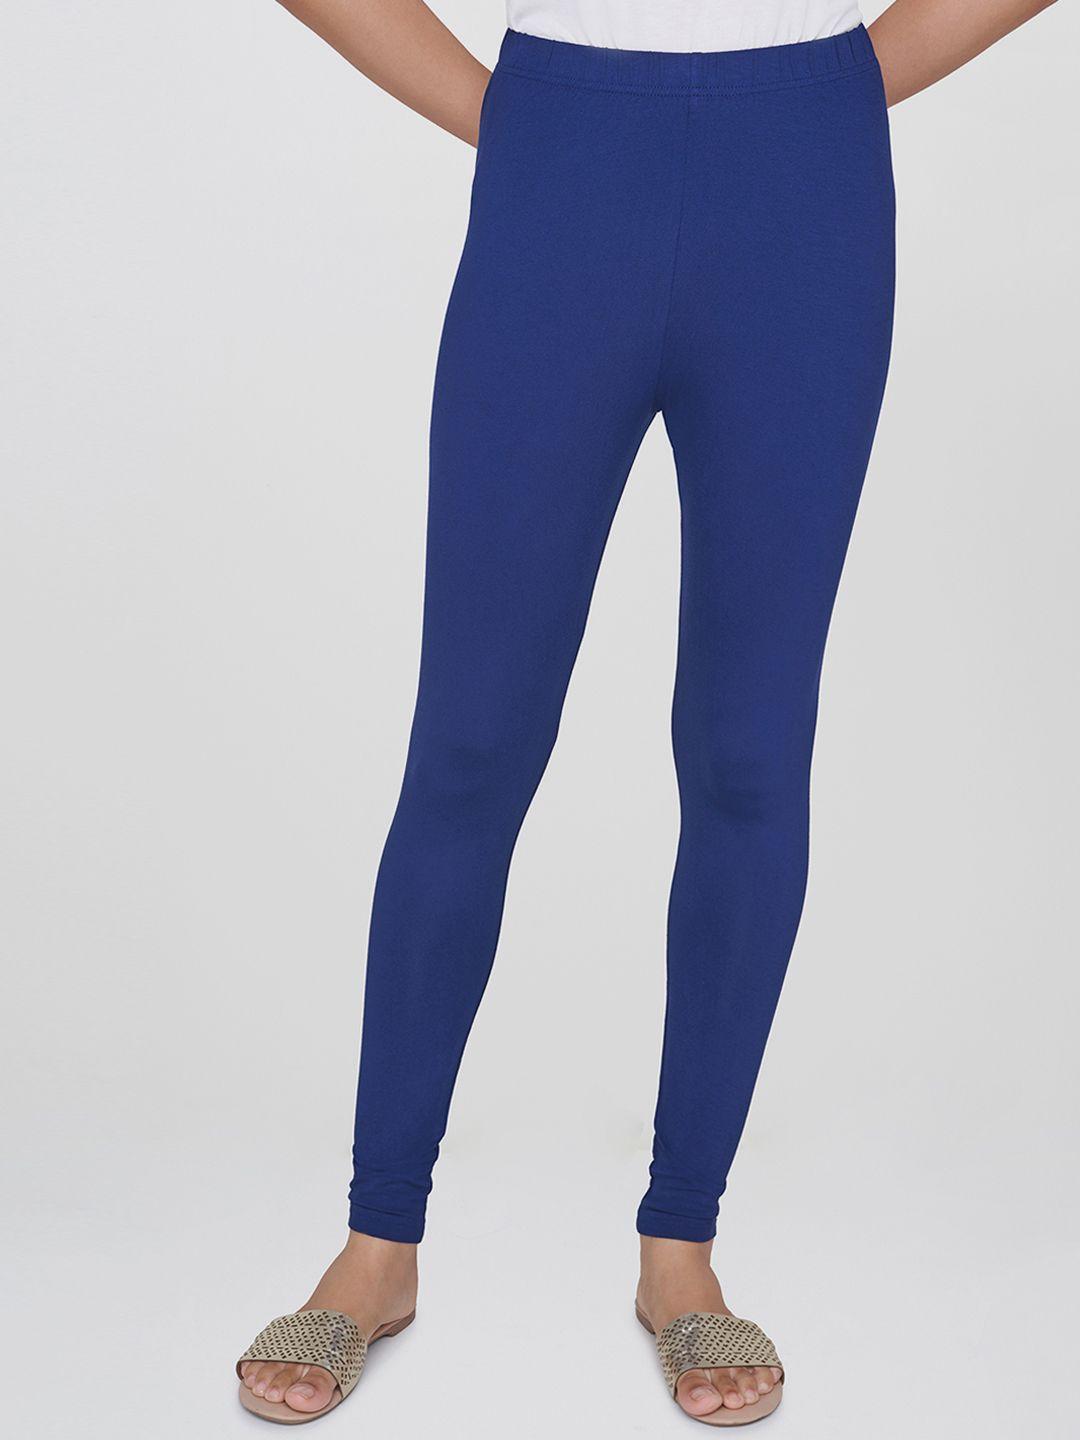 global desi women navy blue solid churidar length leggings